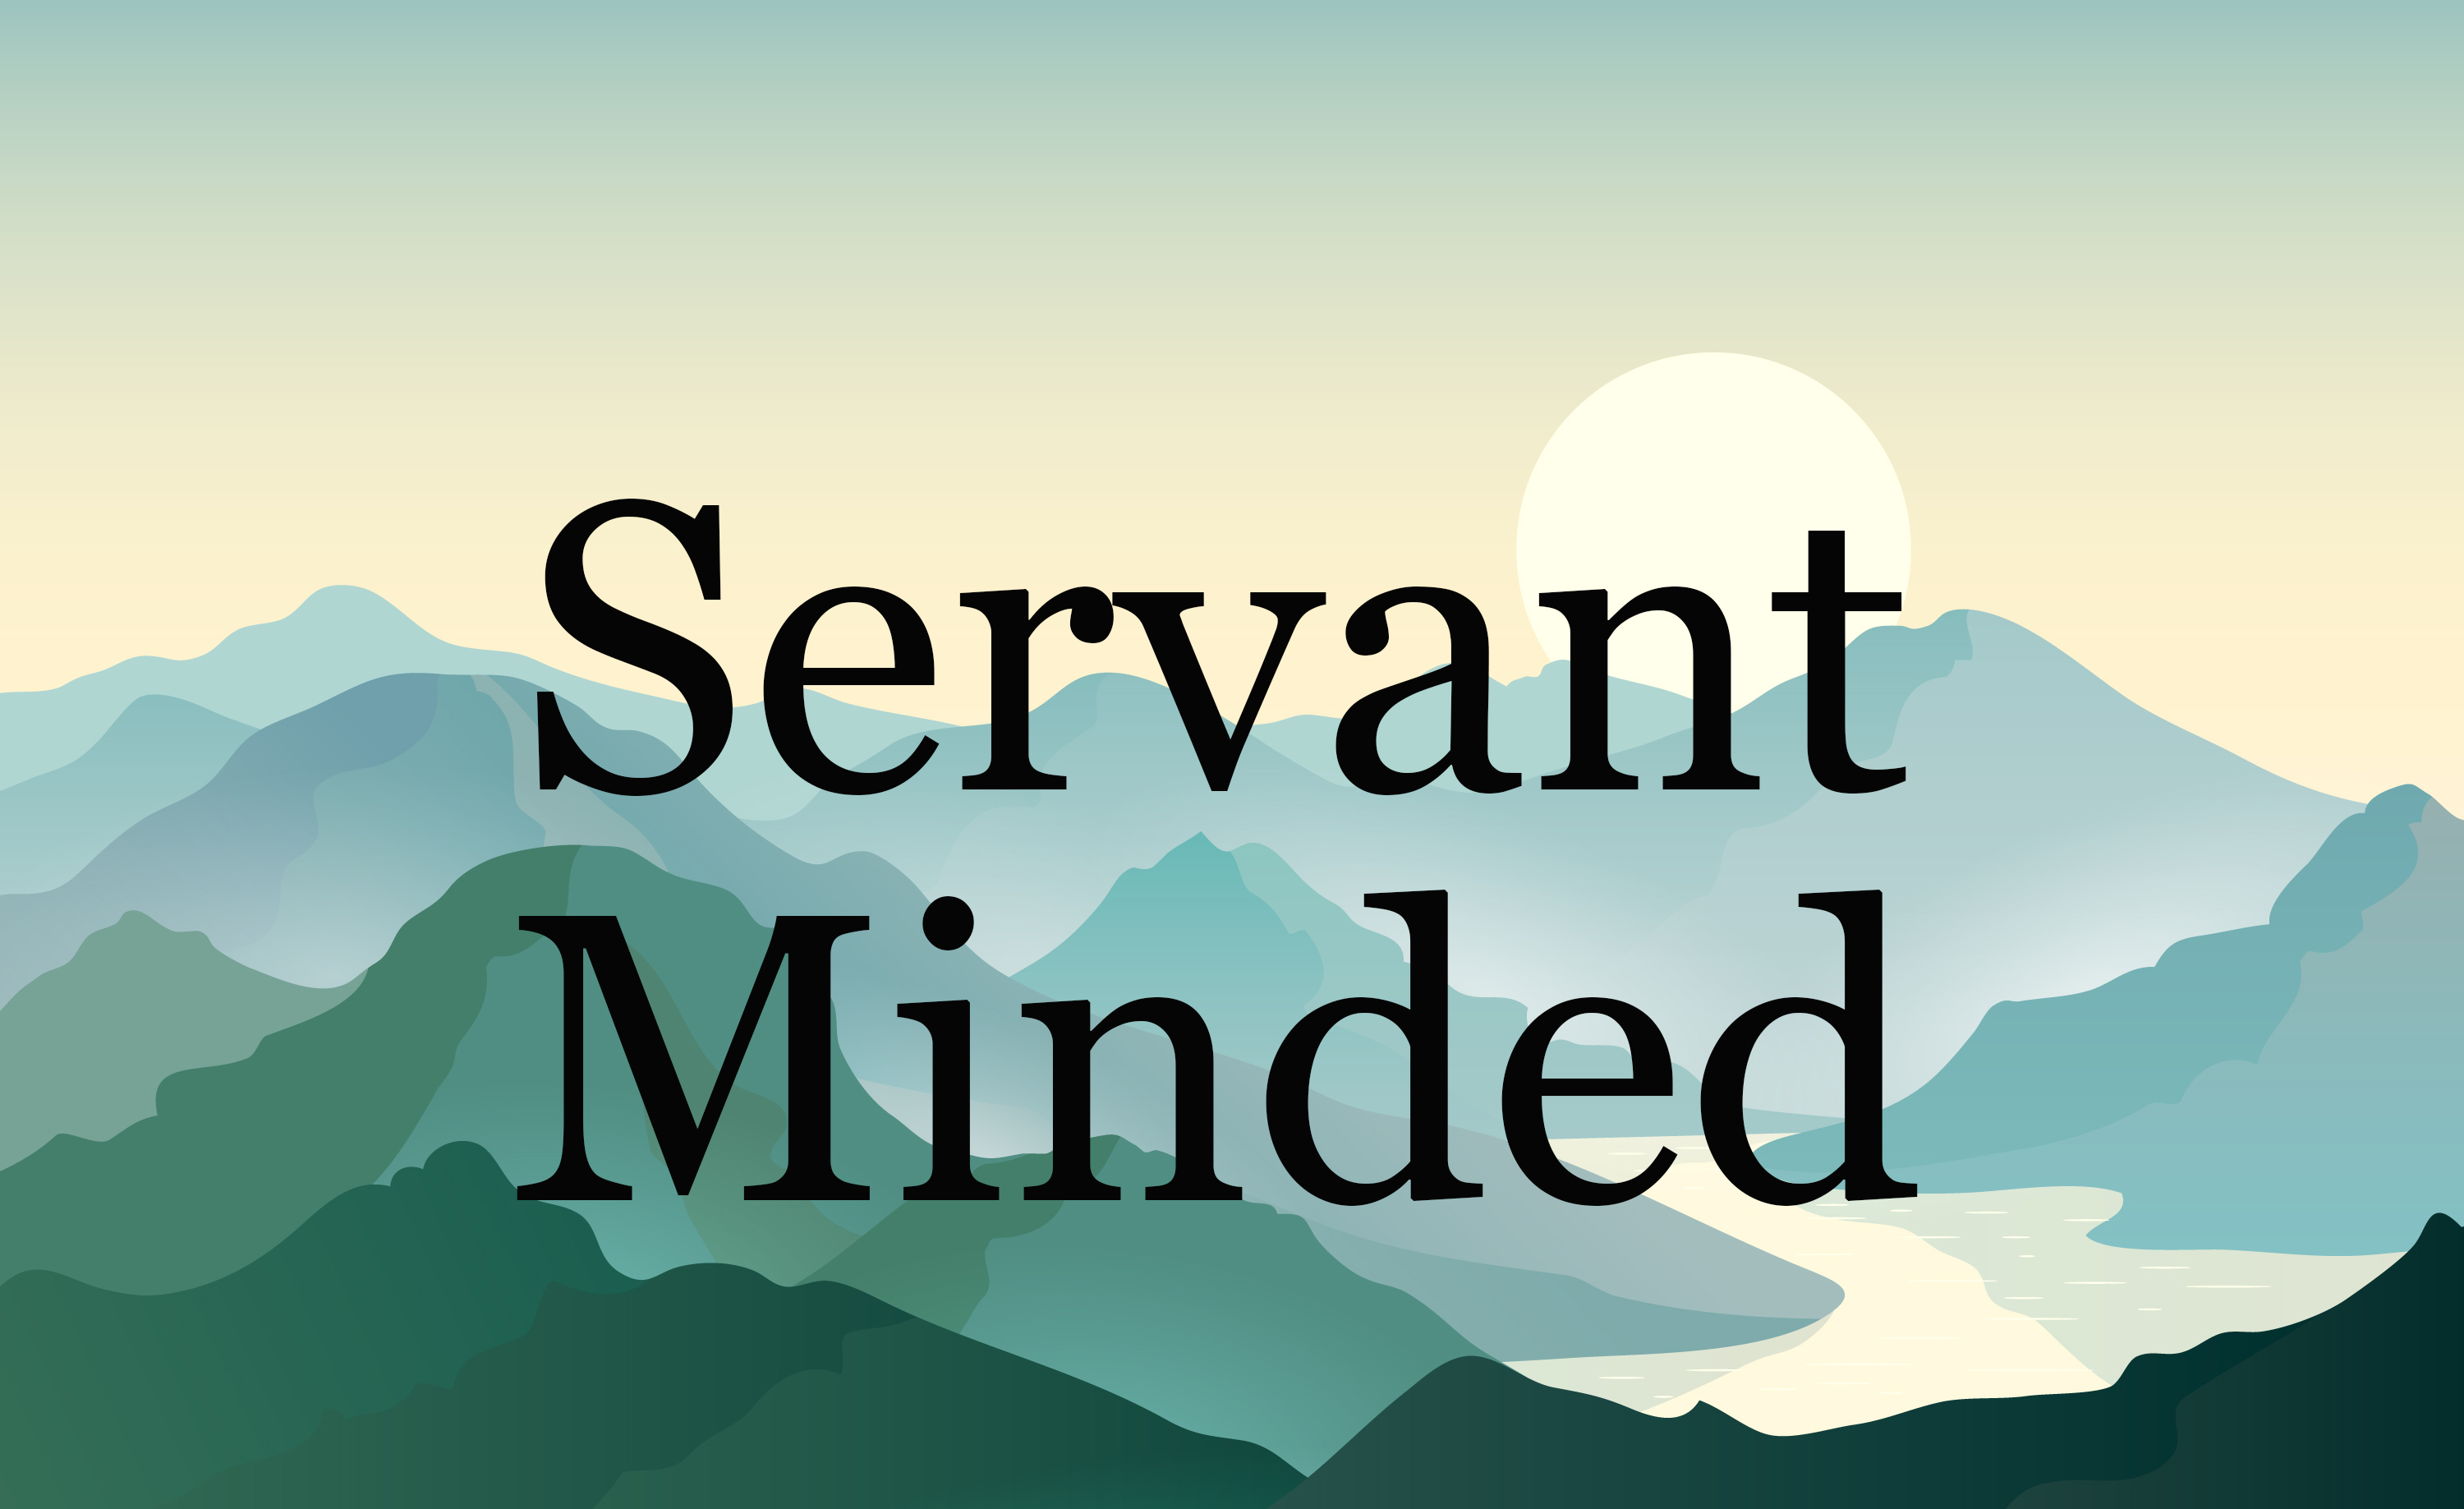 Servant Minded